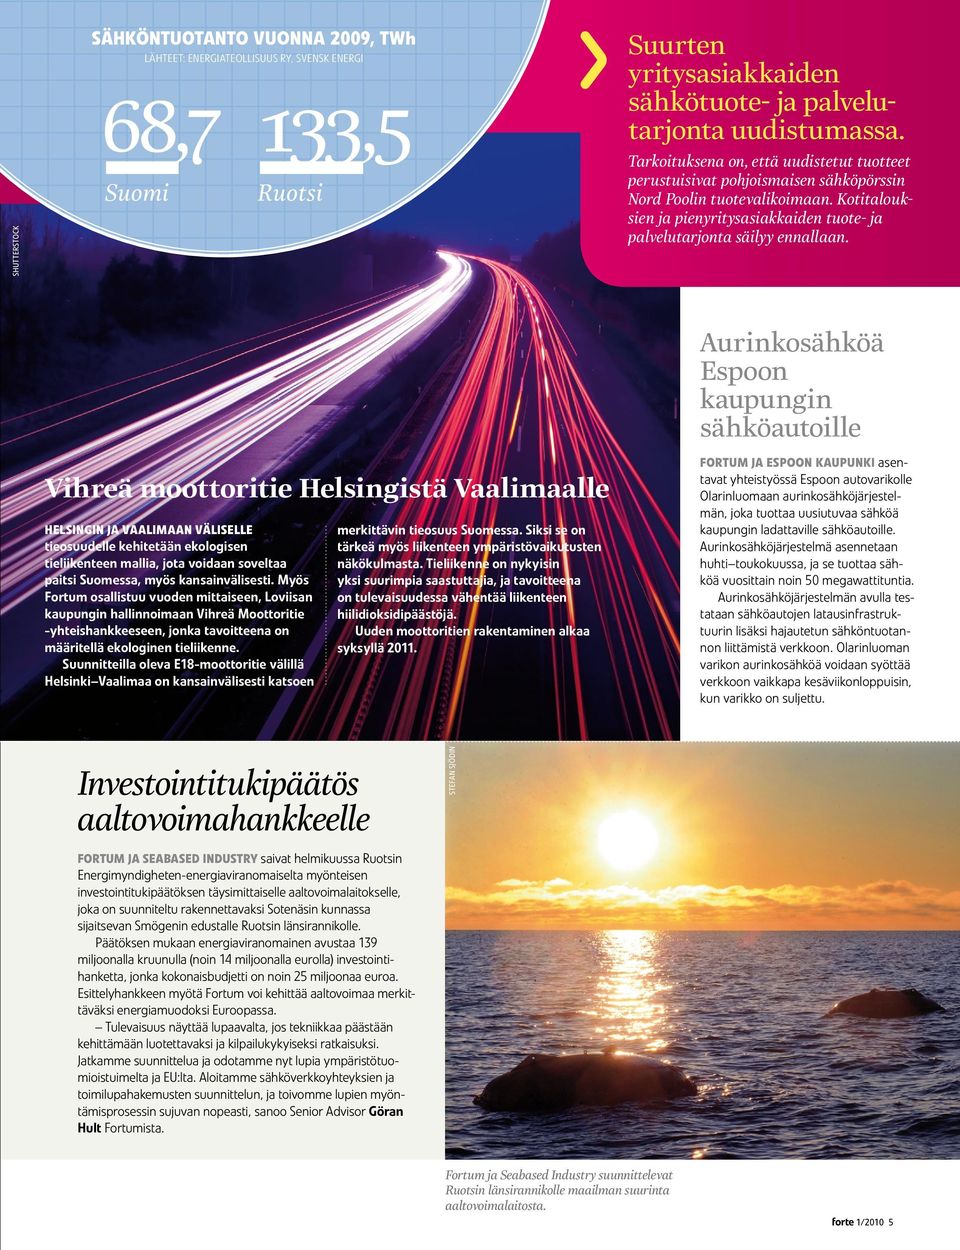 Vihreä moottoritie Helsingistä Vaalimaalle Helsingin ja Vaalimaan väliselle tieosuudelle kehitetään ekologisen tieliikenteen mallia, jota voidaan soveltaa paitsi Suomessa, myös kansainvälisesti.